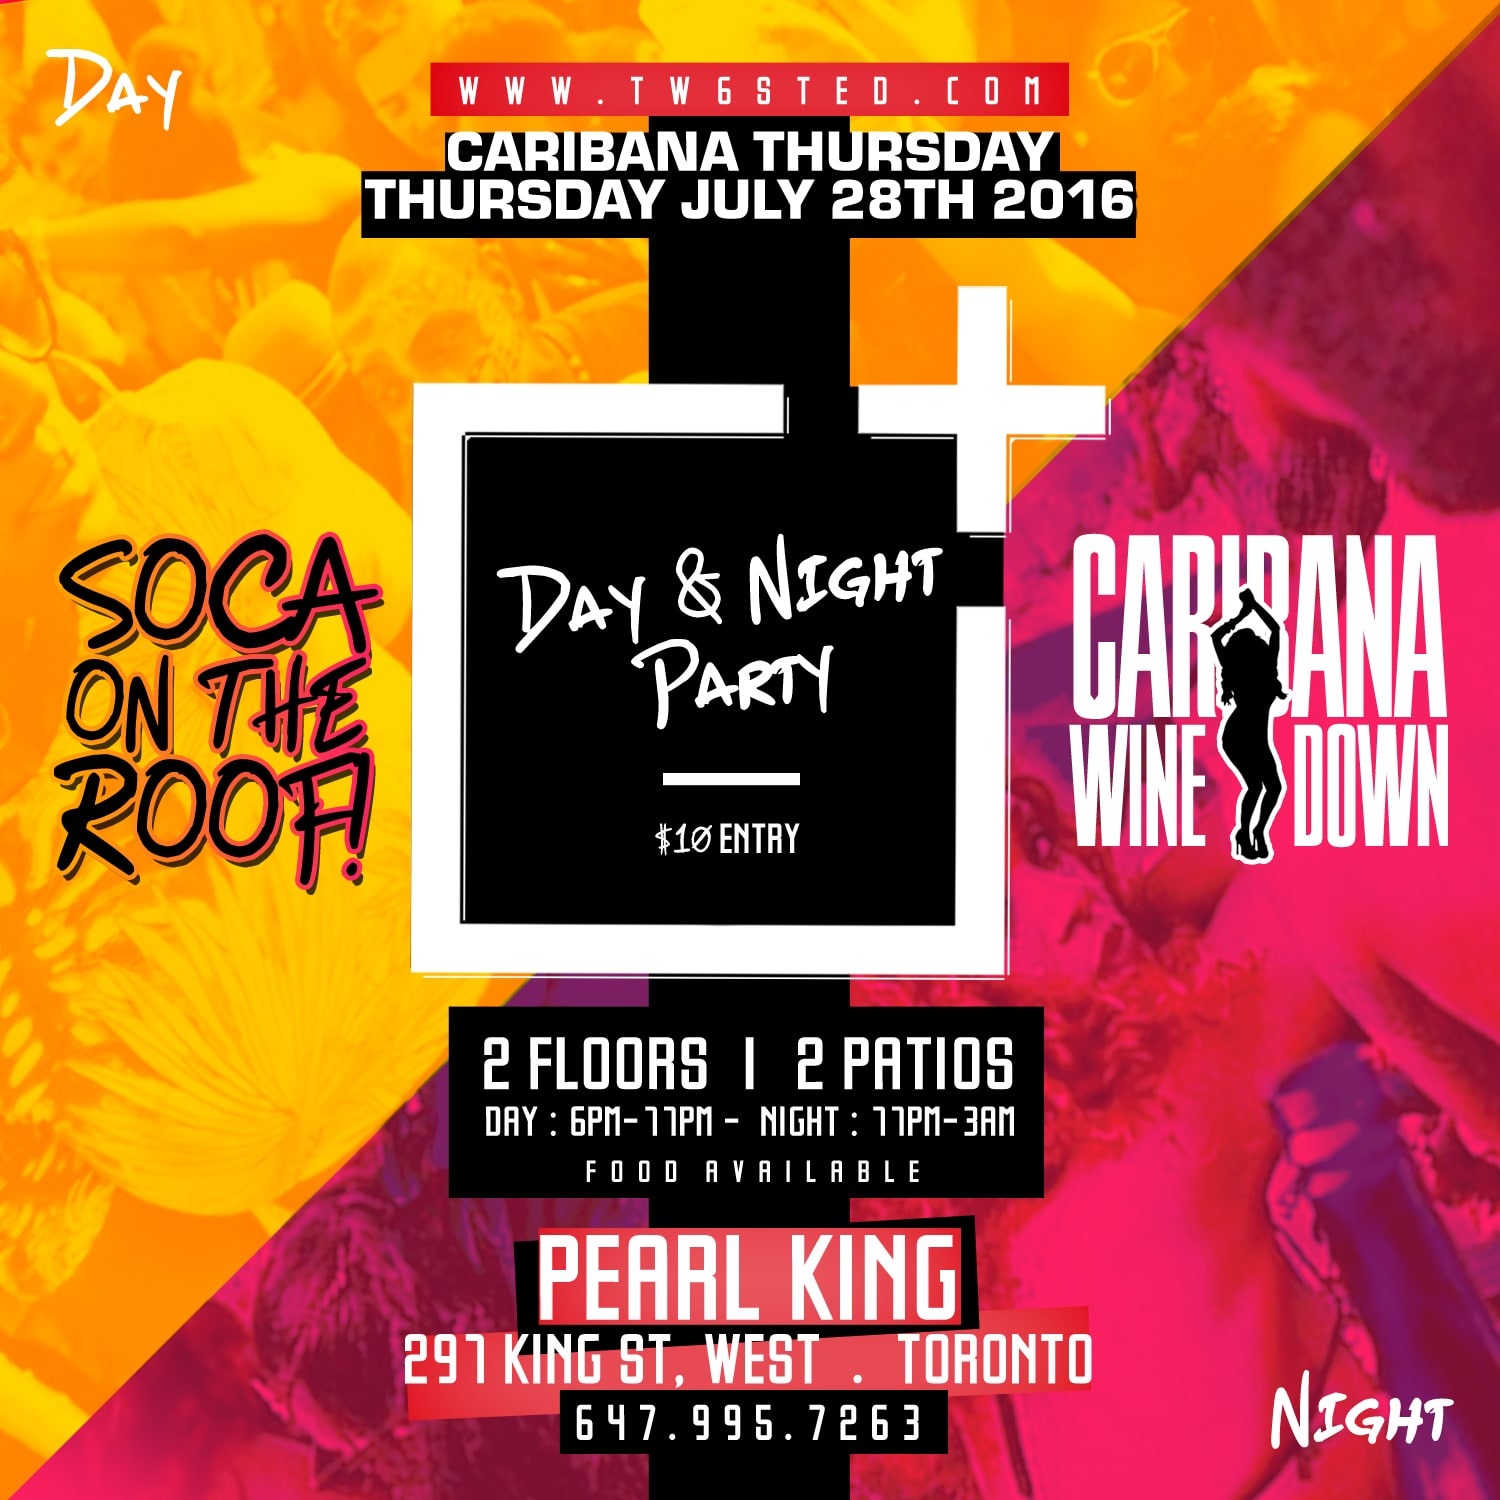 SOCA ON THE ROOF + CARIBANA WINE DOWN★ Day & Night Party★ Caribana Thursday